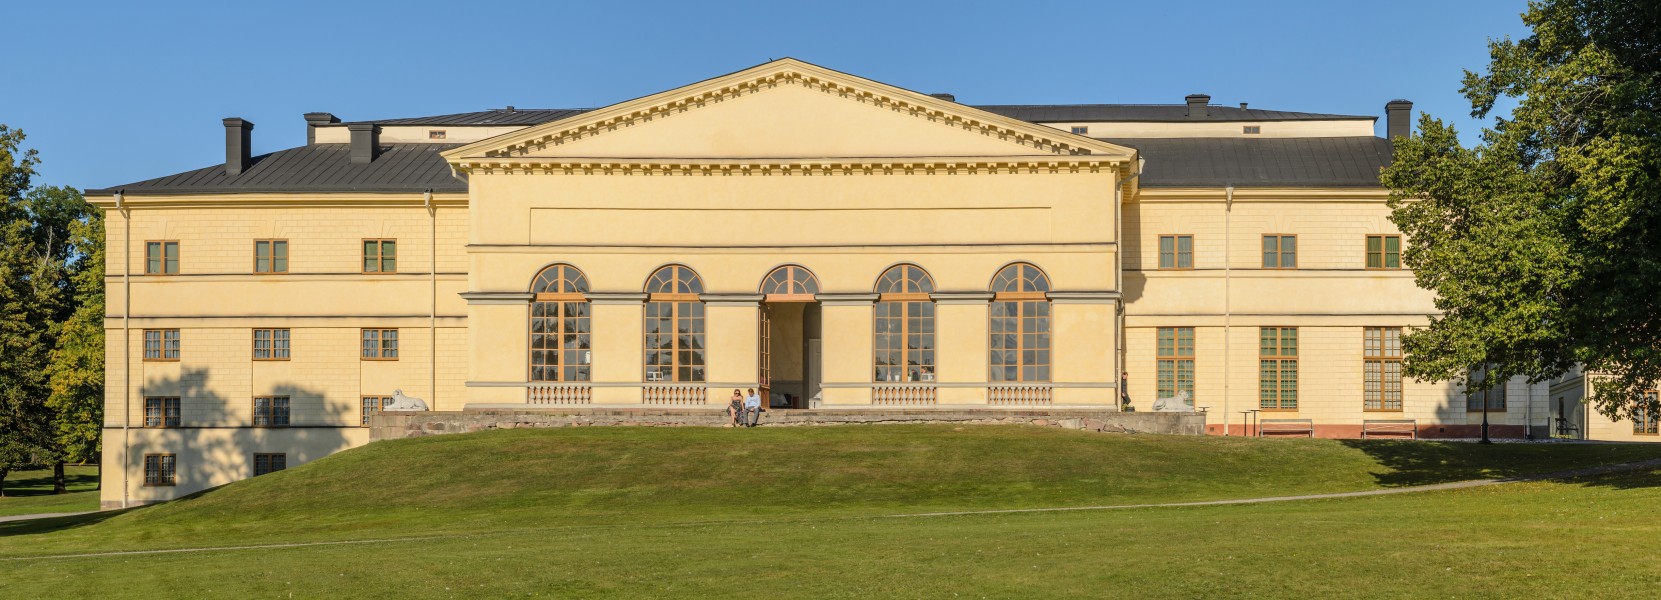 Drottningholms slottsteater augusti 2013